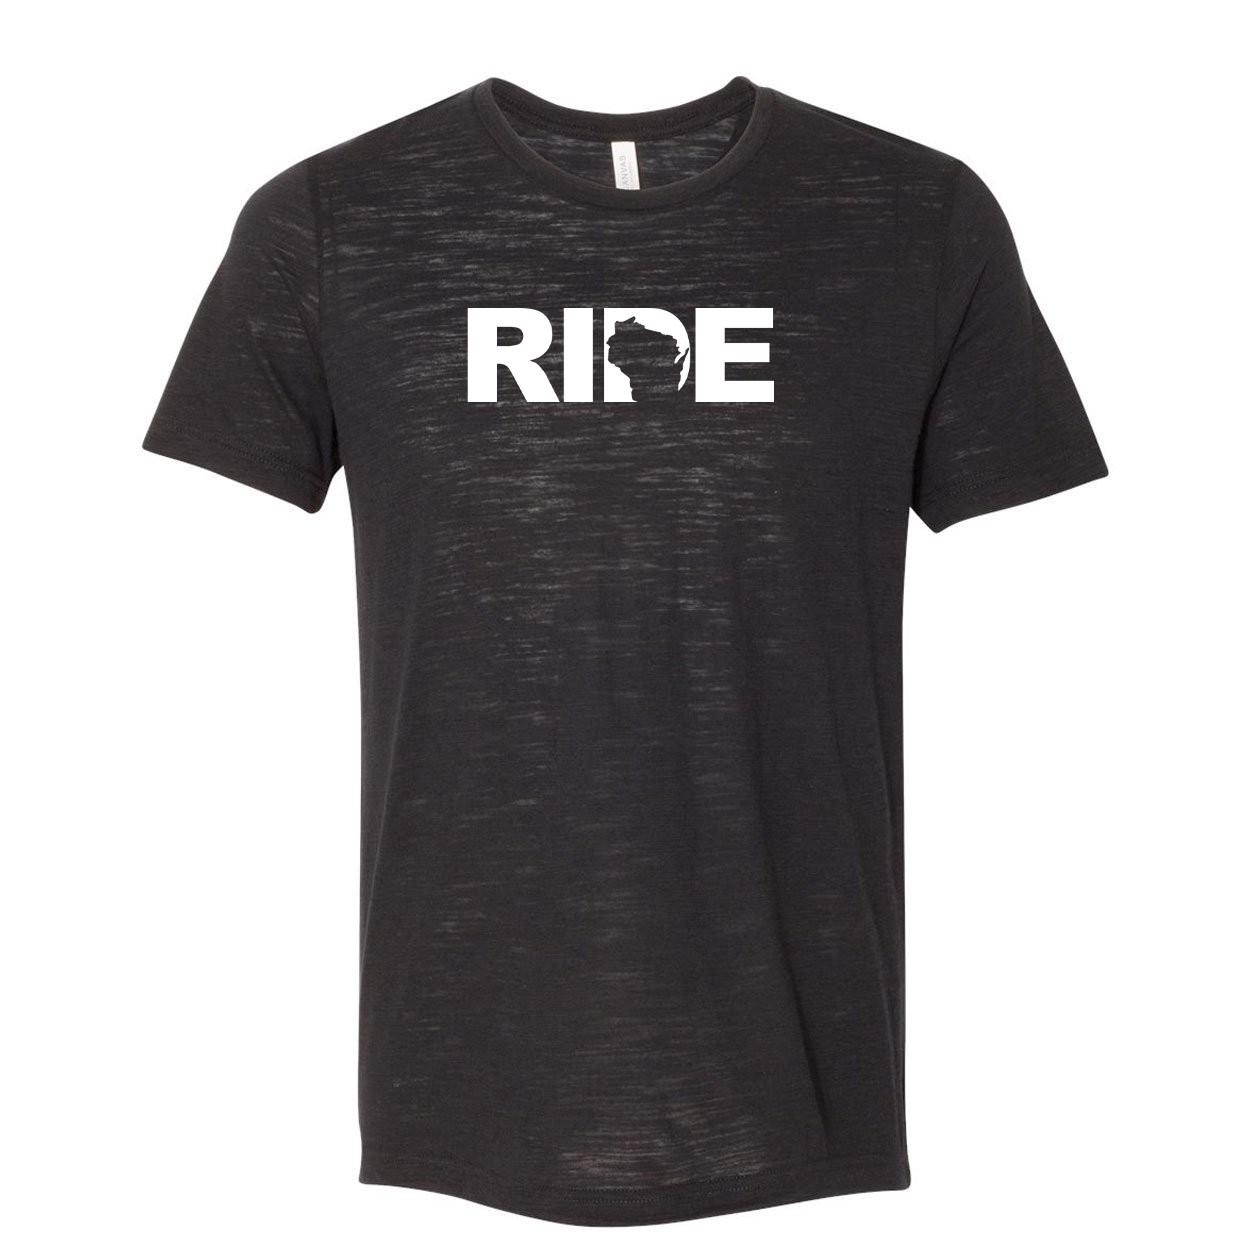 Ride Wisconsin Classic Unisex Premium Texture T-Shirt Solid Black Slub (White Logo)